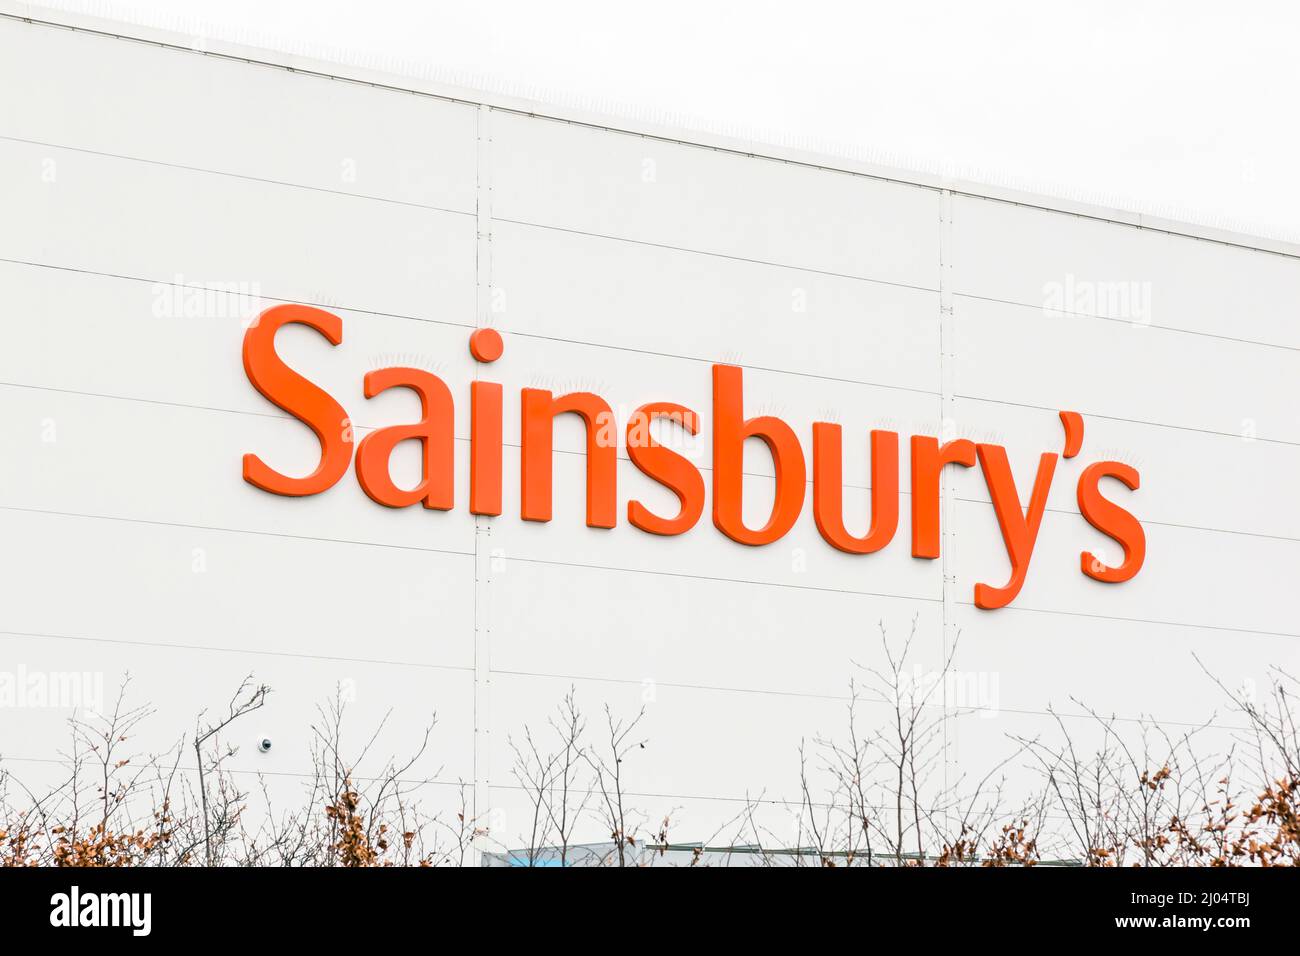 Sainsbury's supermarket sign, UK Stock Photo